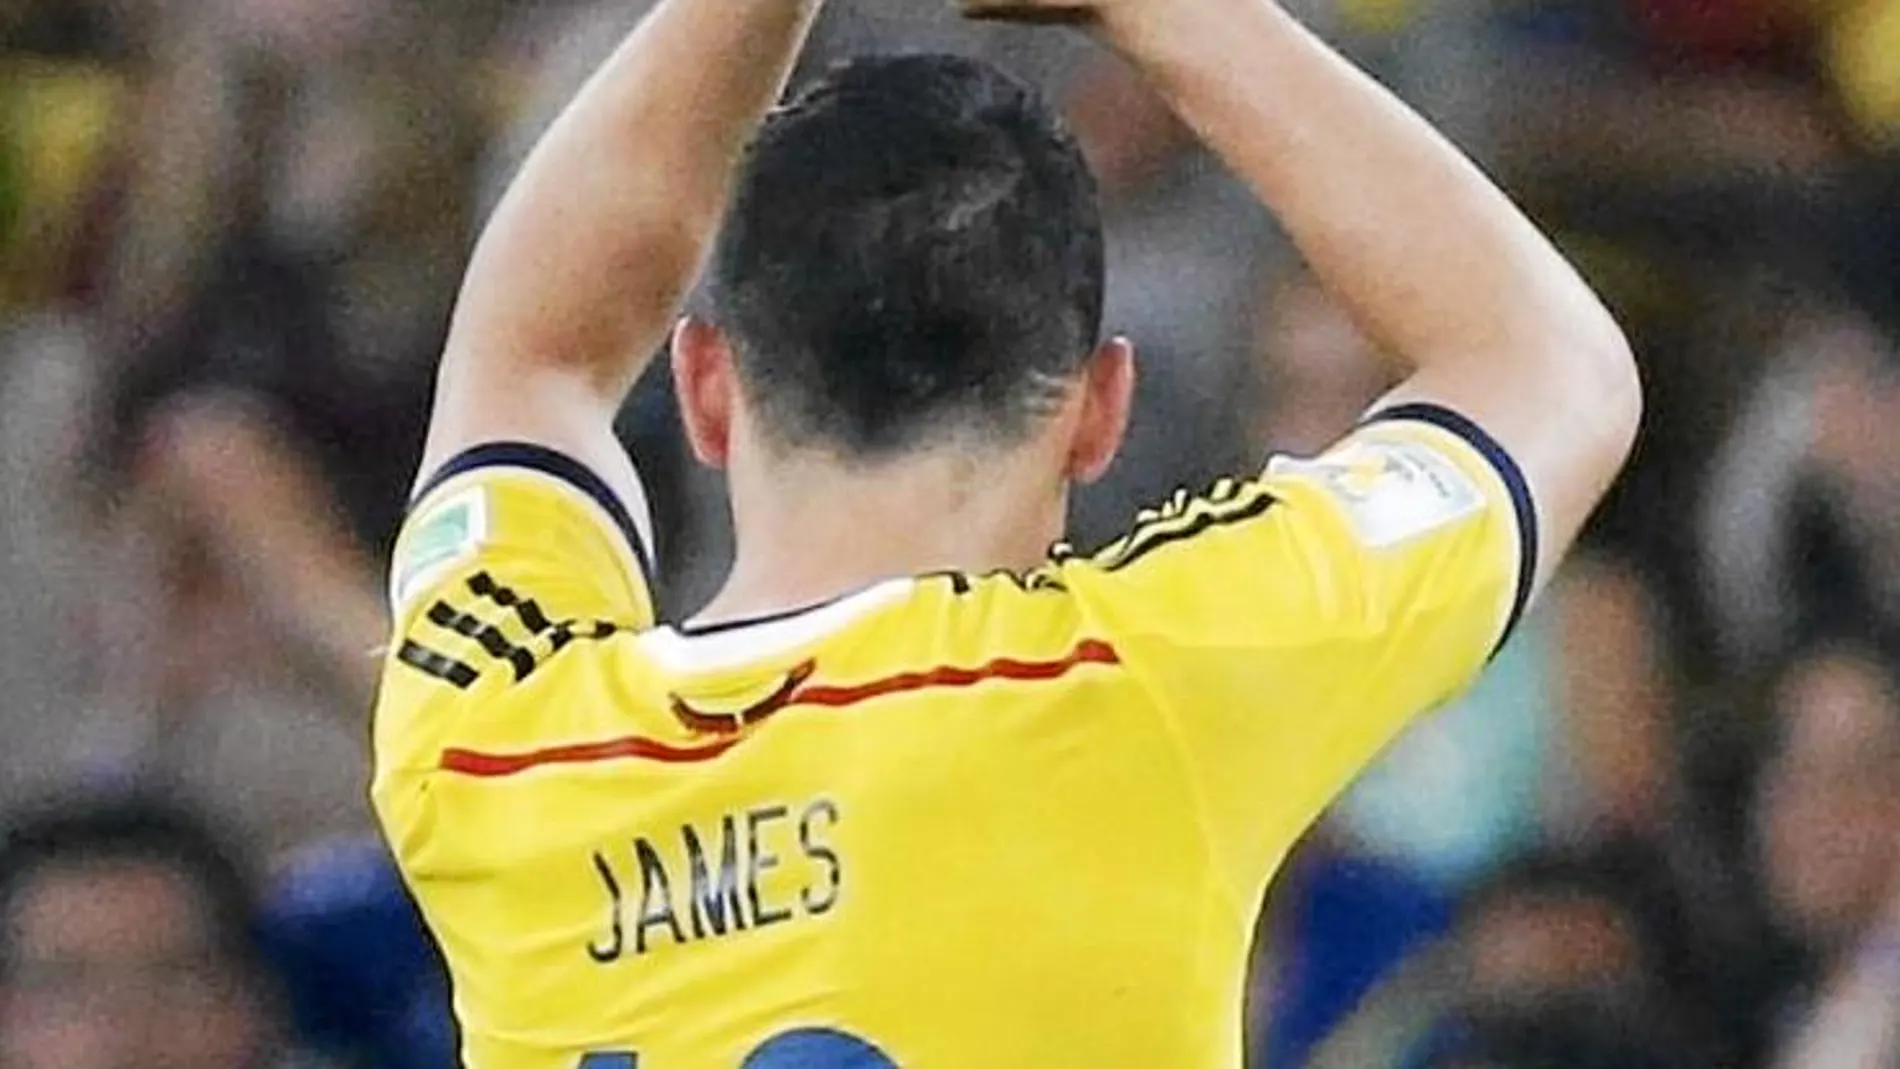 Cara a cara: ¿Debe fichar el Madrid a James Rodríguez?